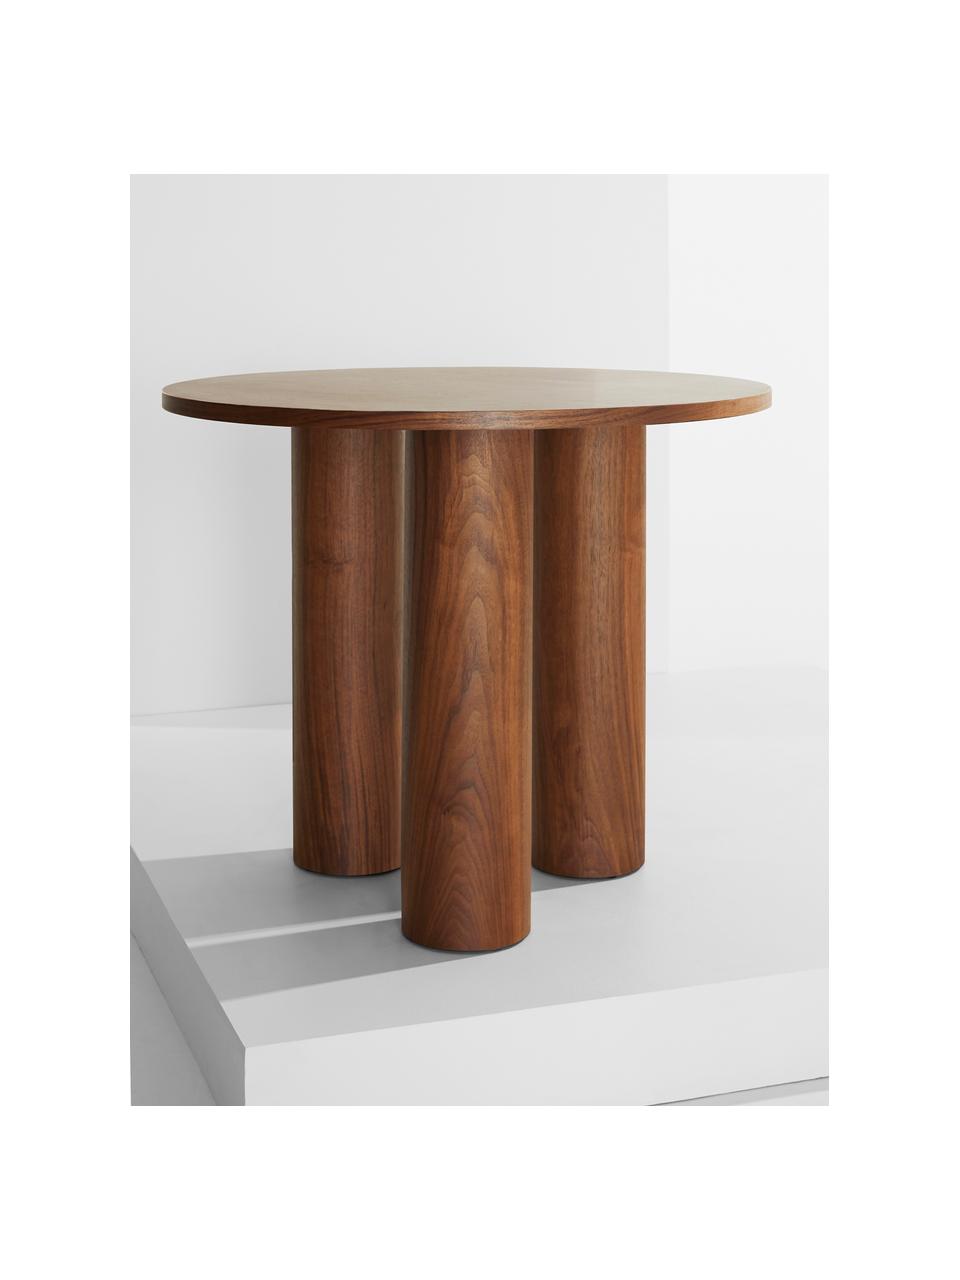 Kulatý stůl Colette, Ø 90 cm, Dřevovláknitá deska střední hustoty (MDF), s ořechovou dýhou 

Tento produkt je vyroben z udržitelných zdrojů dřeva s certifikací FSC®., Ořechové dřevo, Ø 90 cm